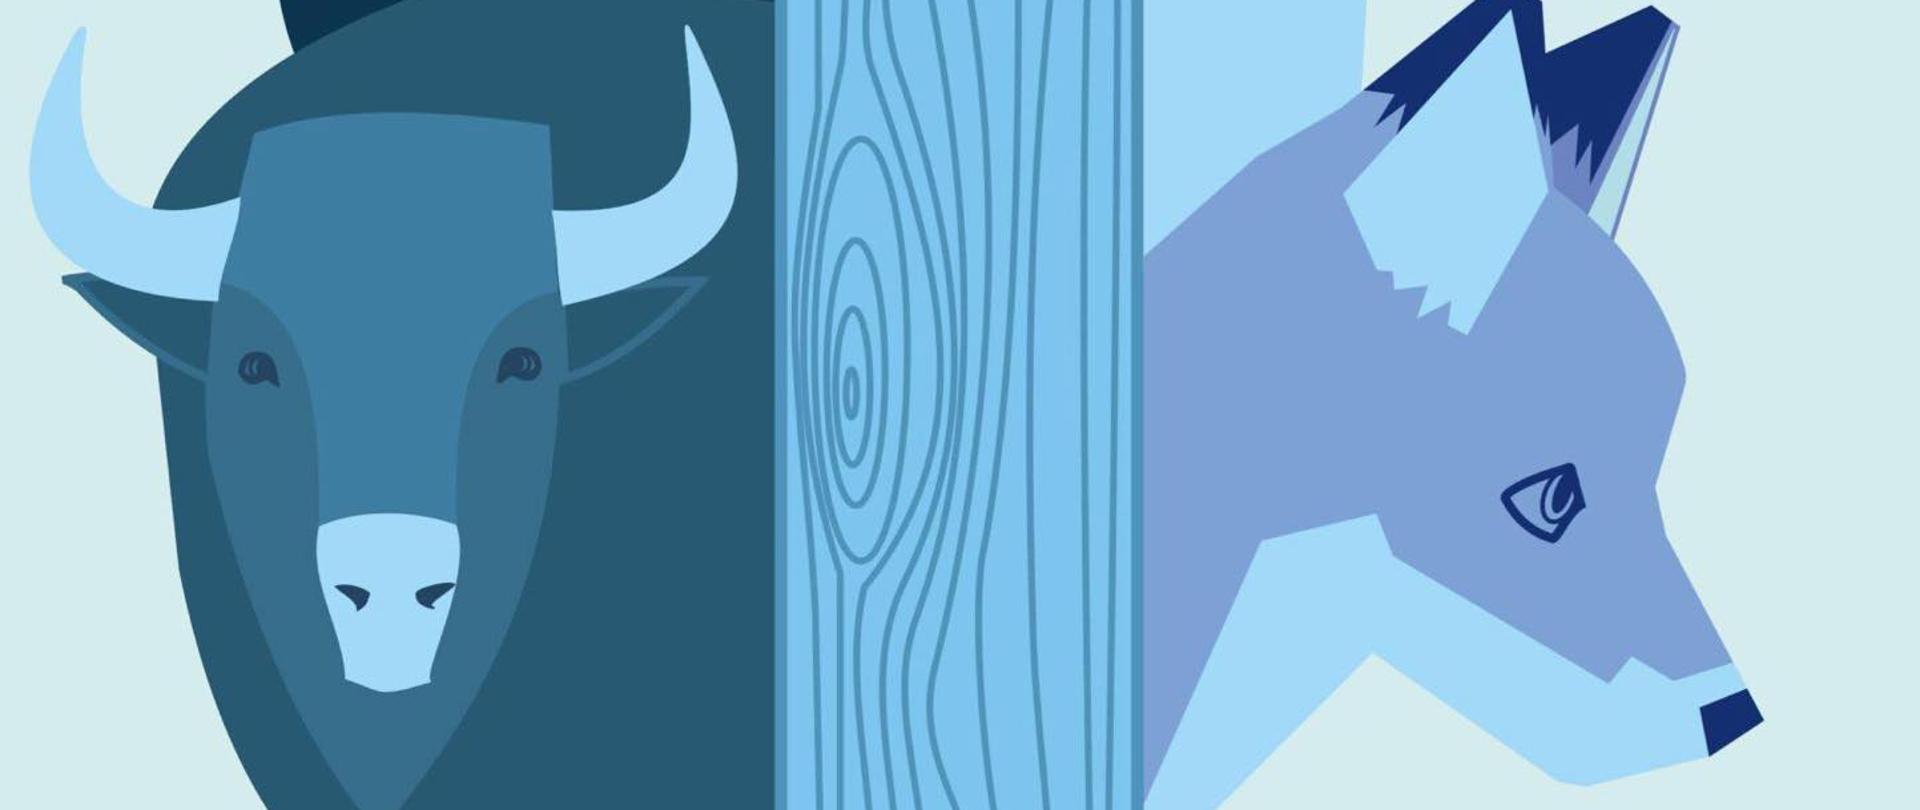 Praca graficzna, w odcieniach niebieskiego zwierzęta: dzik, jeleń, borsuk, sarna, żubr i lis wyglądające zza drzewa